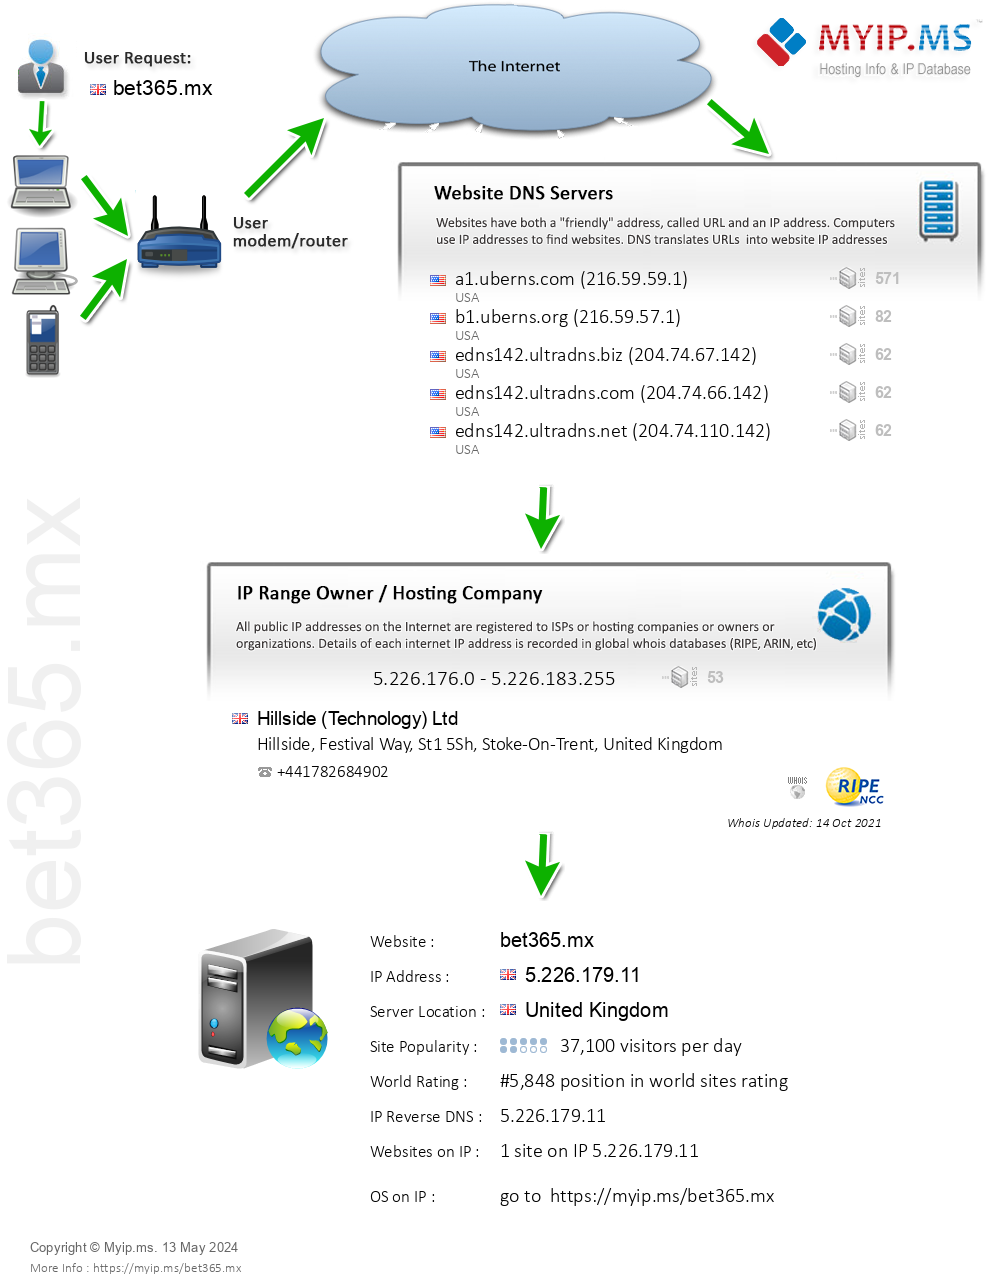 Bet365.mx - Website Hosting Visual IP Diagram